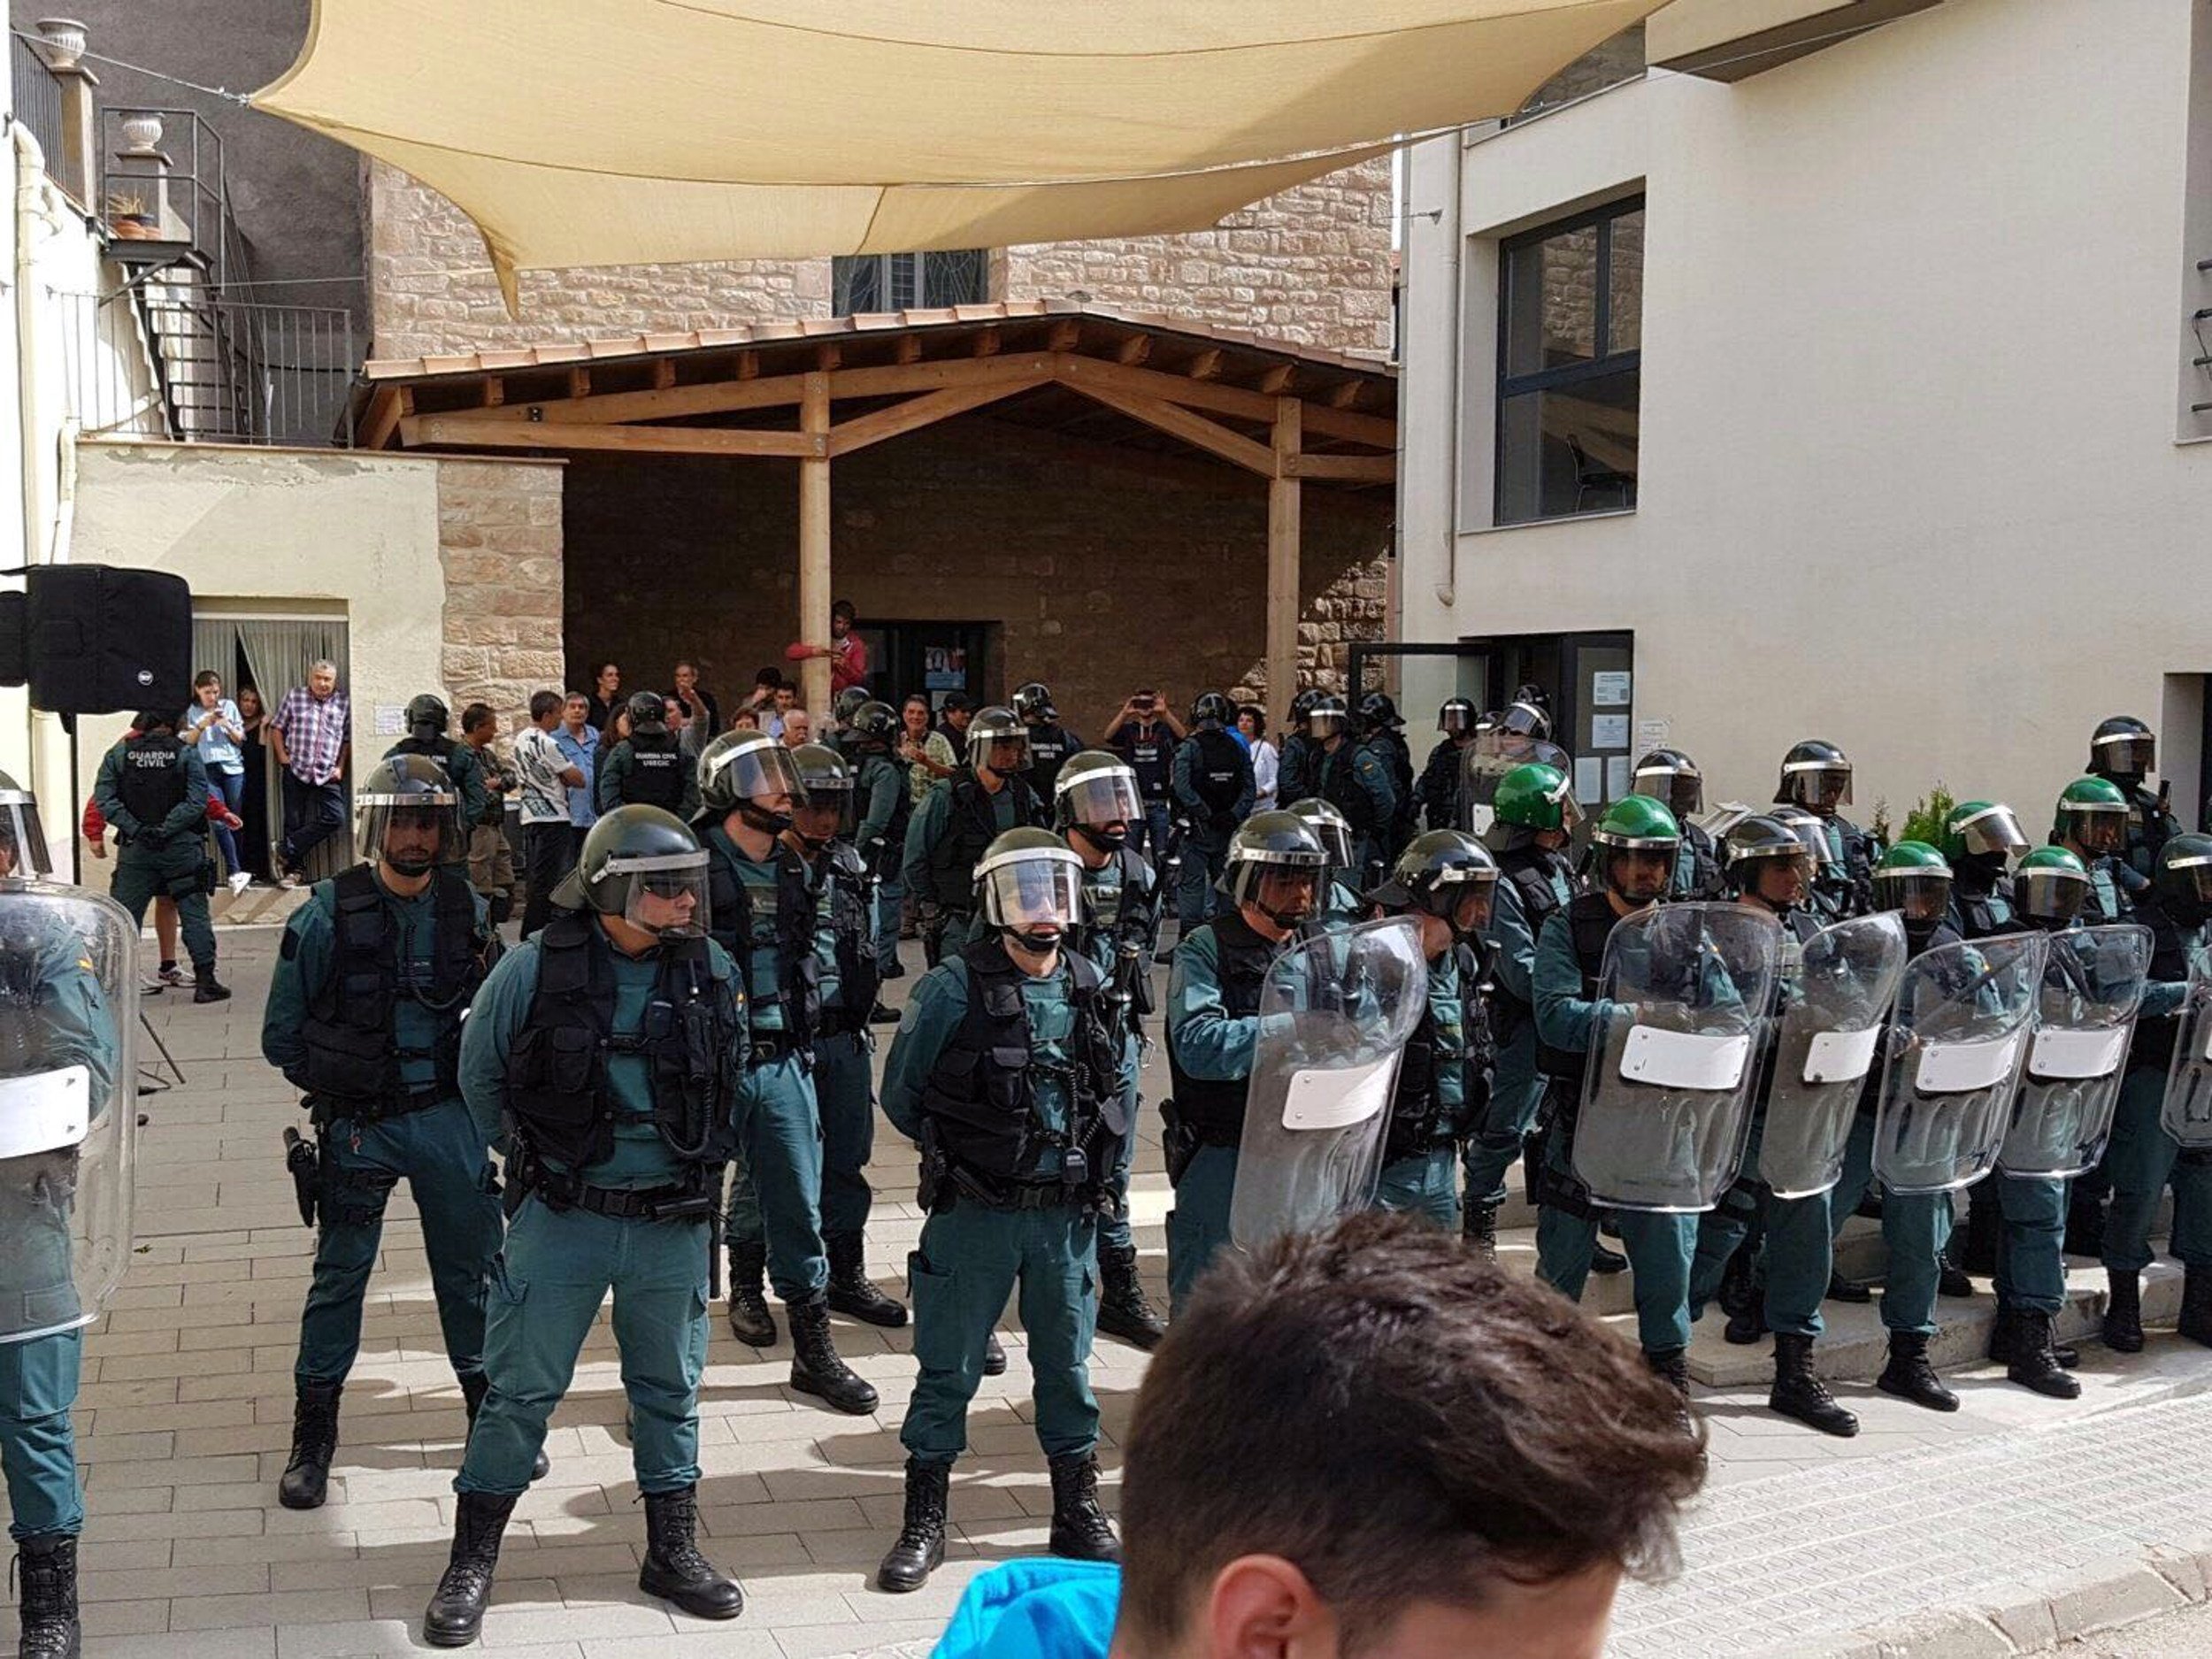 Guàrdies civils critiquen Rajoy (però la notícia és que els indepes són ETA)